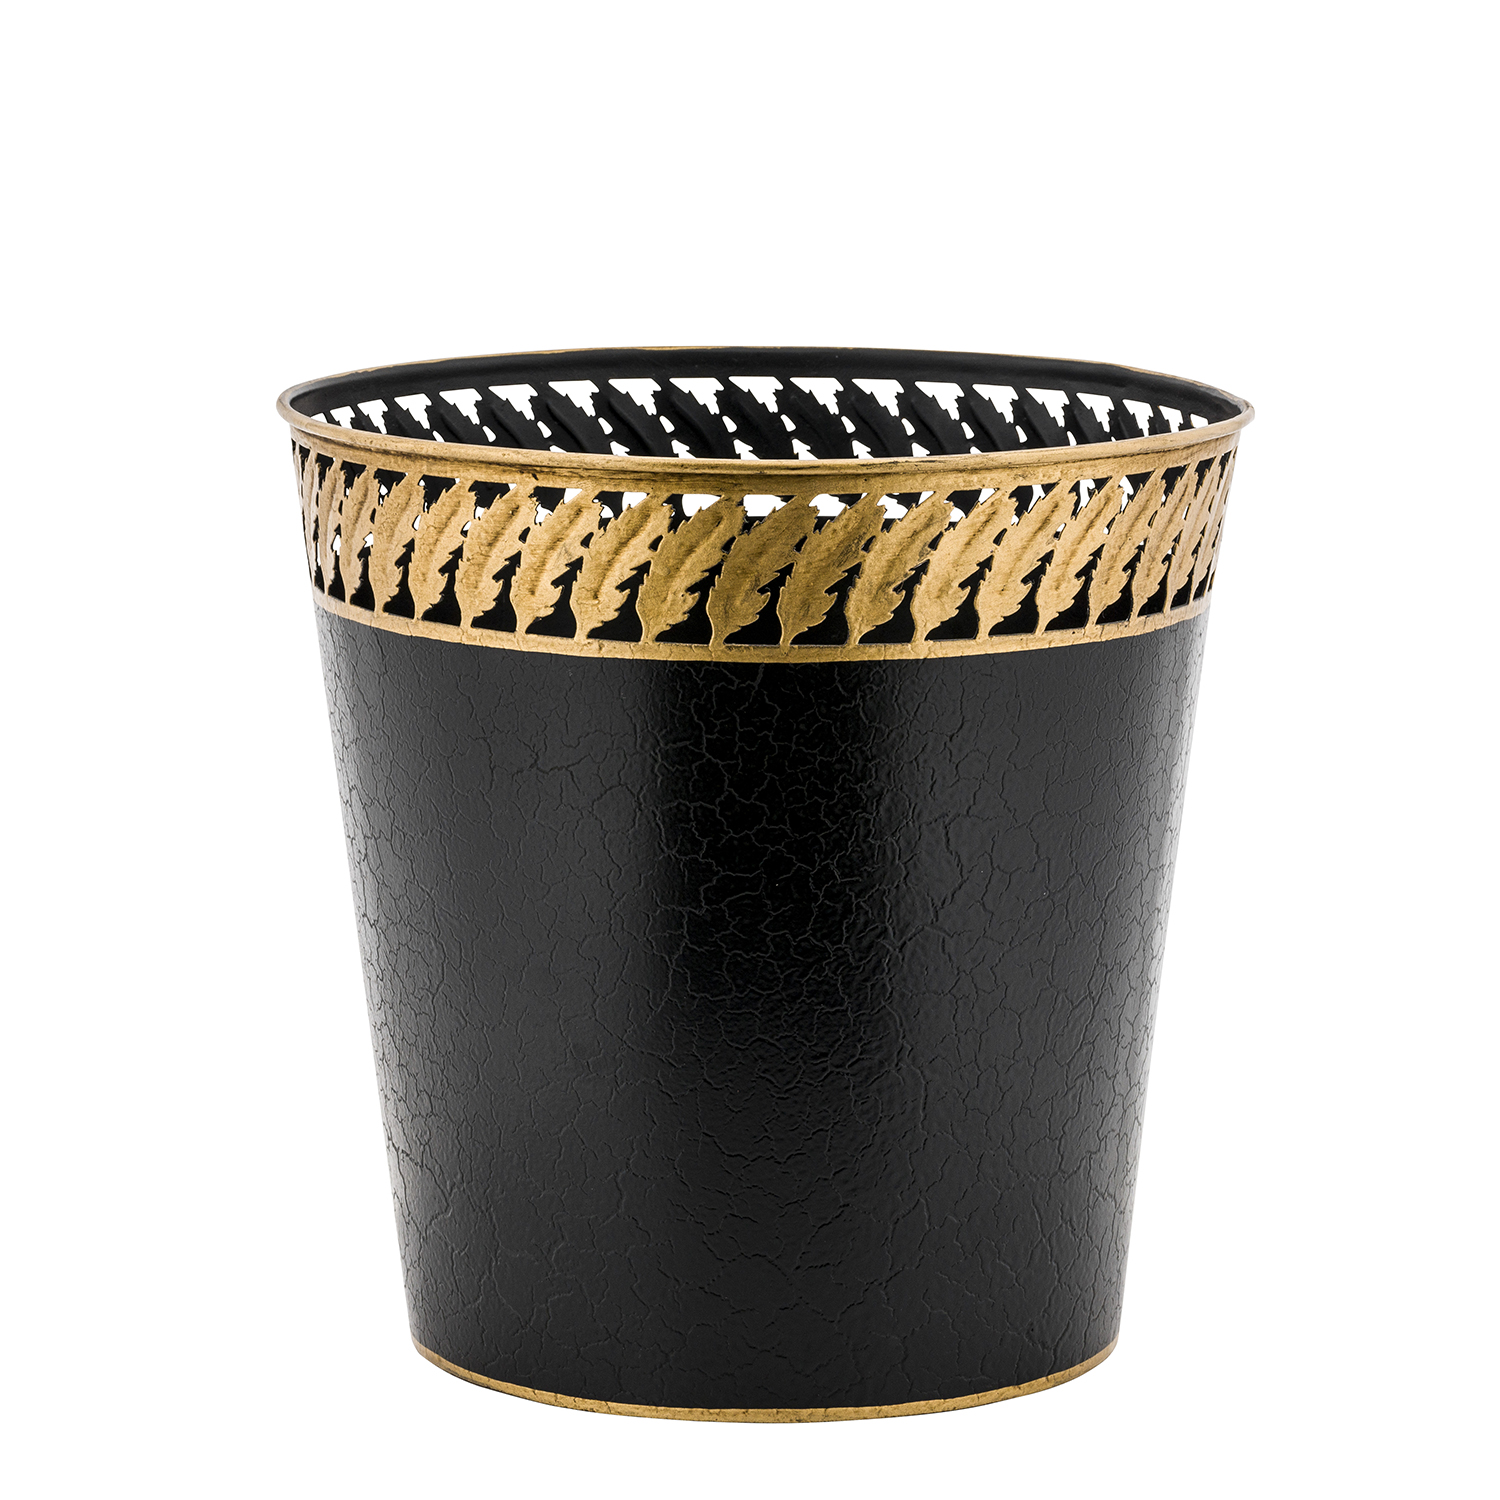 Elegant Black and Gold Waste Paper Bin Basket